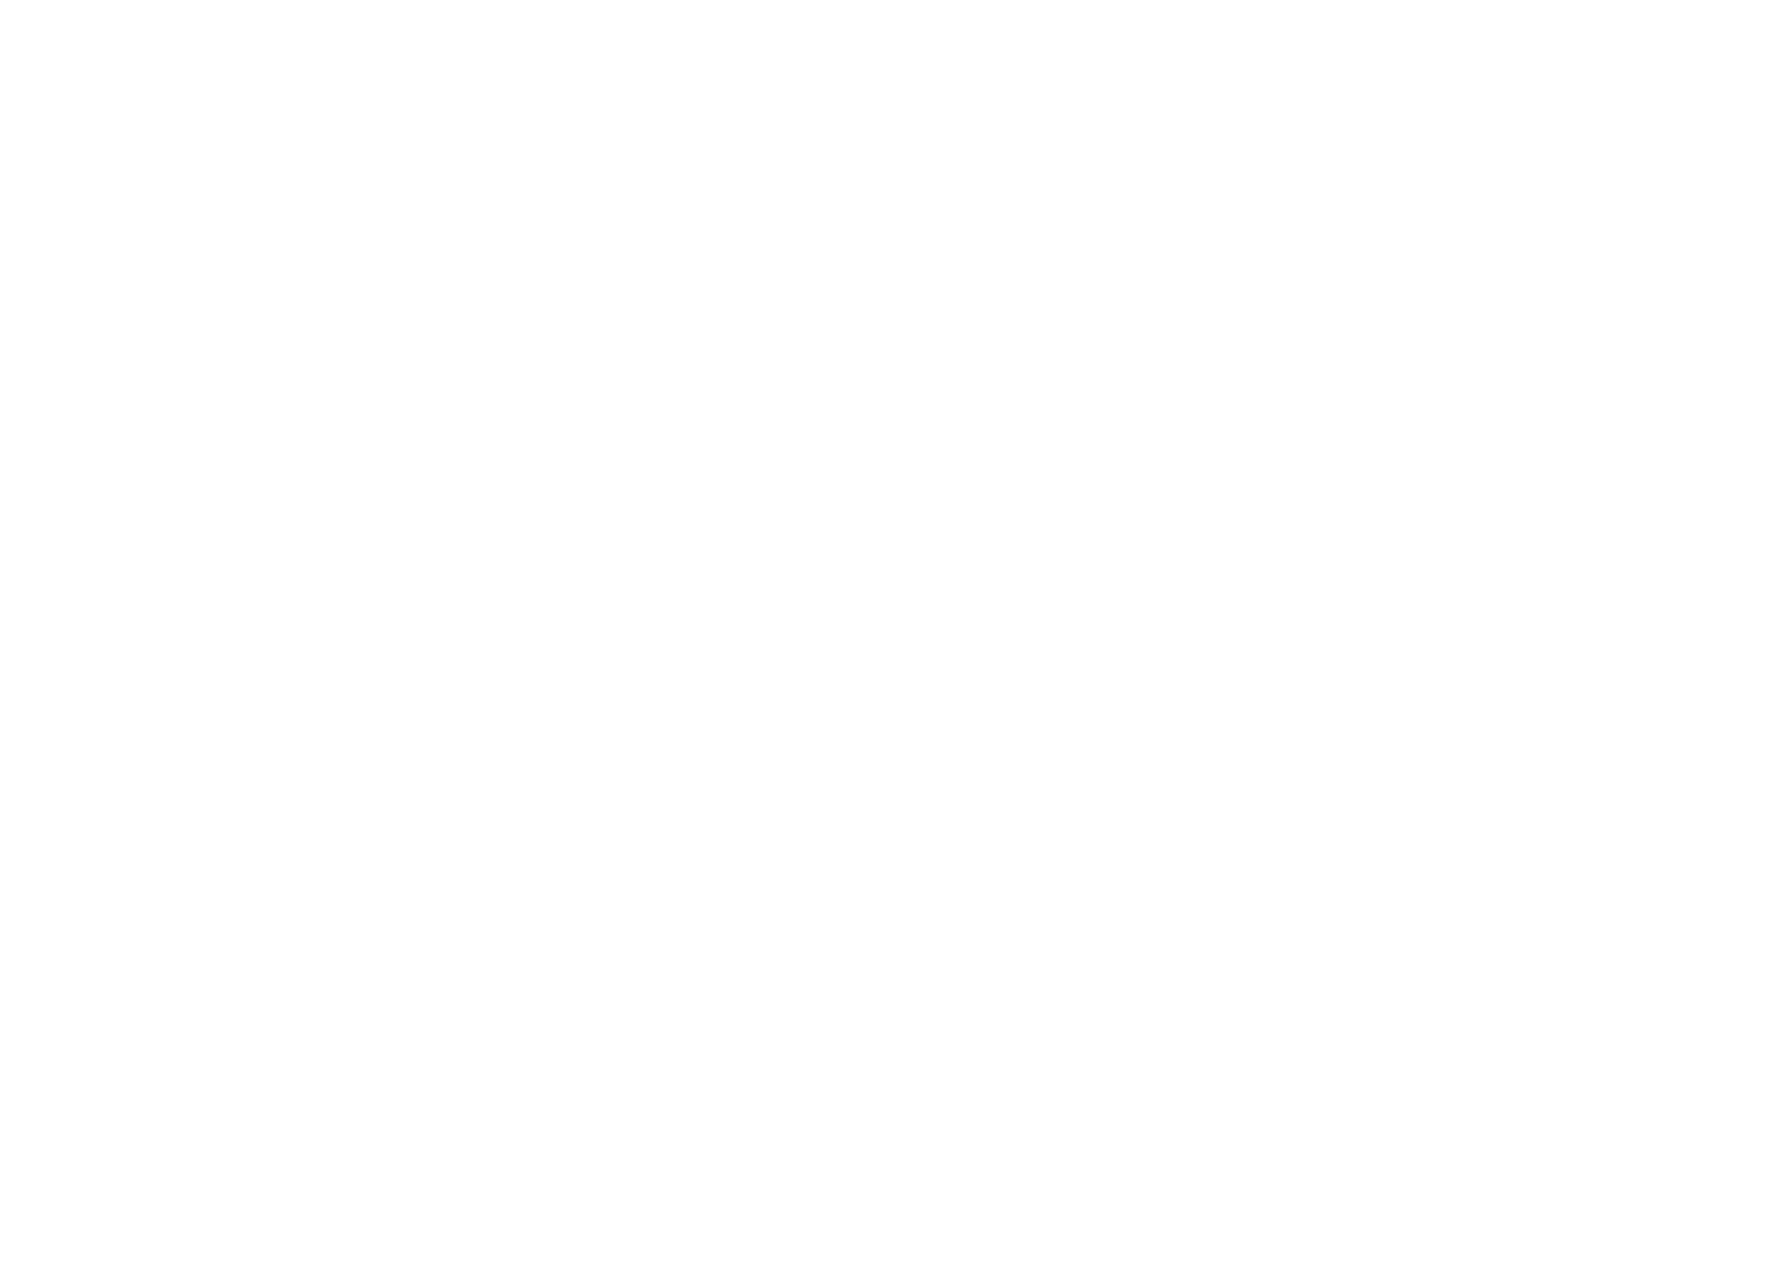 Isaiah Walter